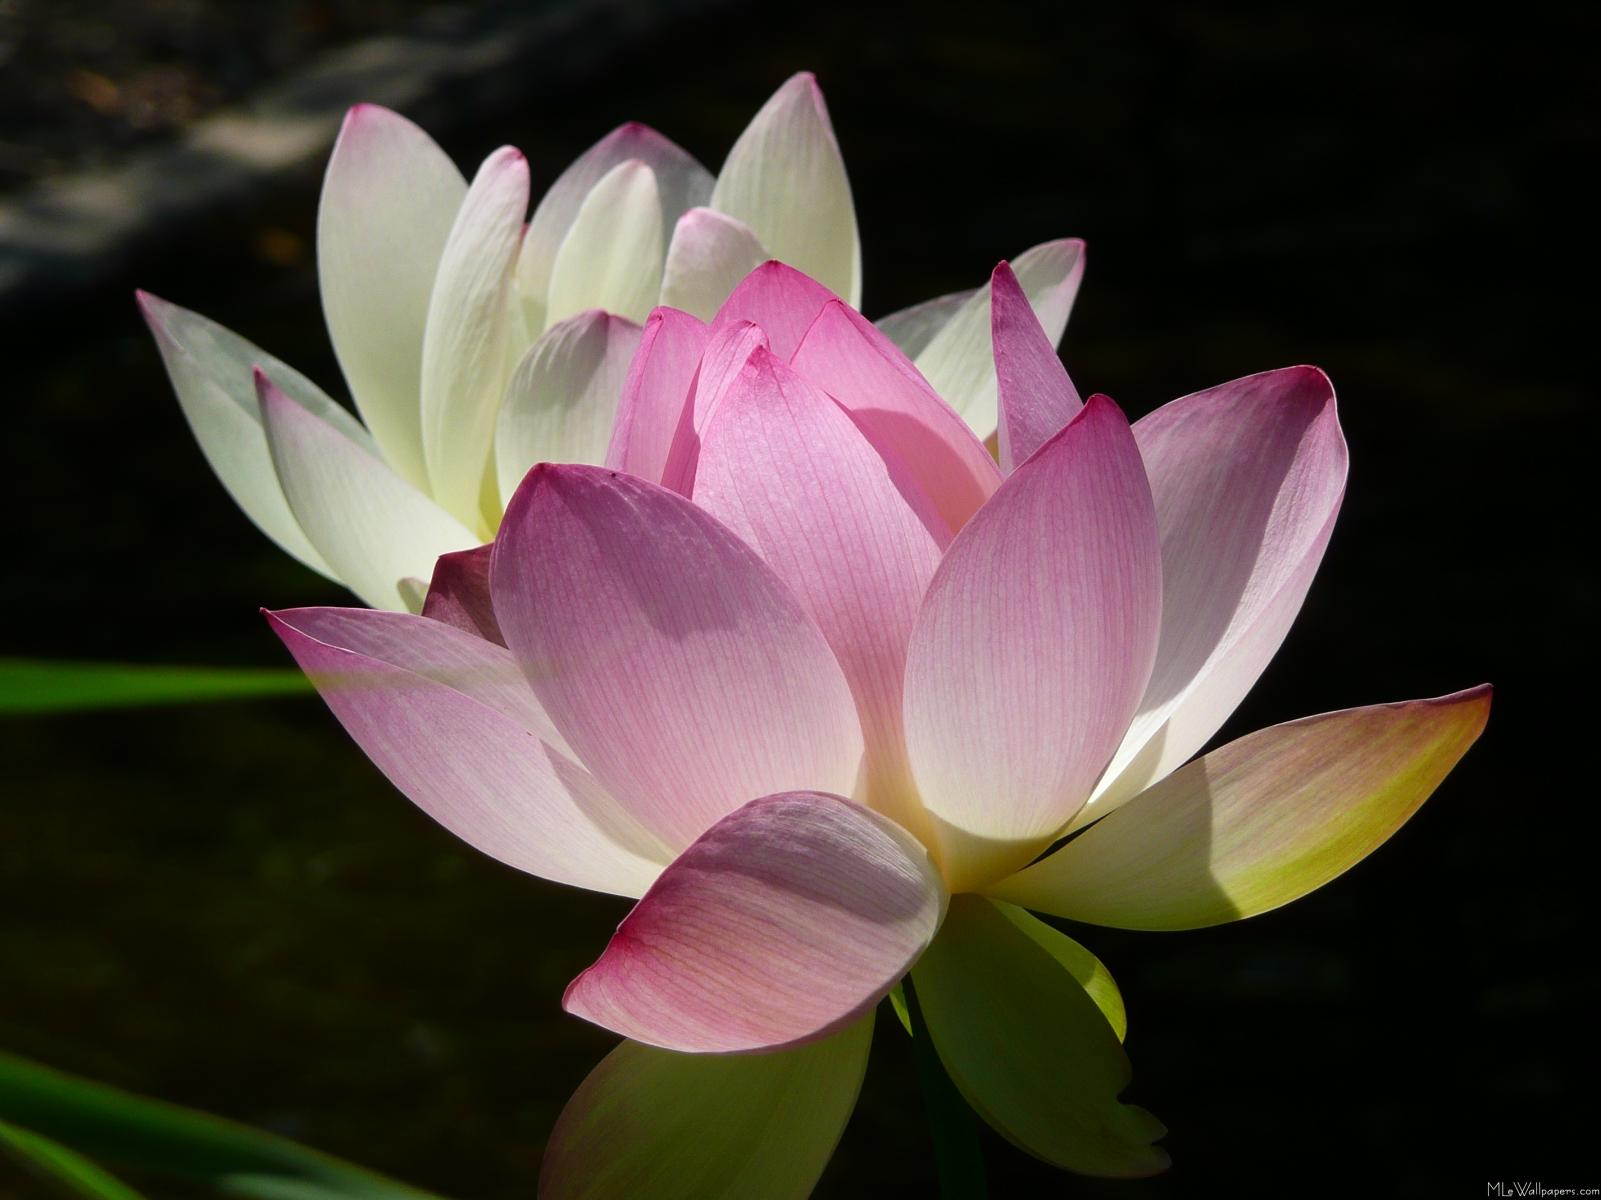 MLeWallpapers.com - Pair of Lotus Flowers II